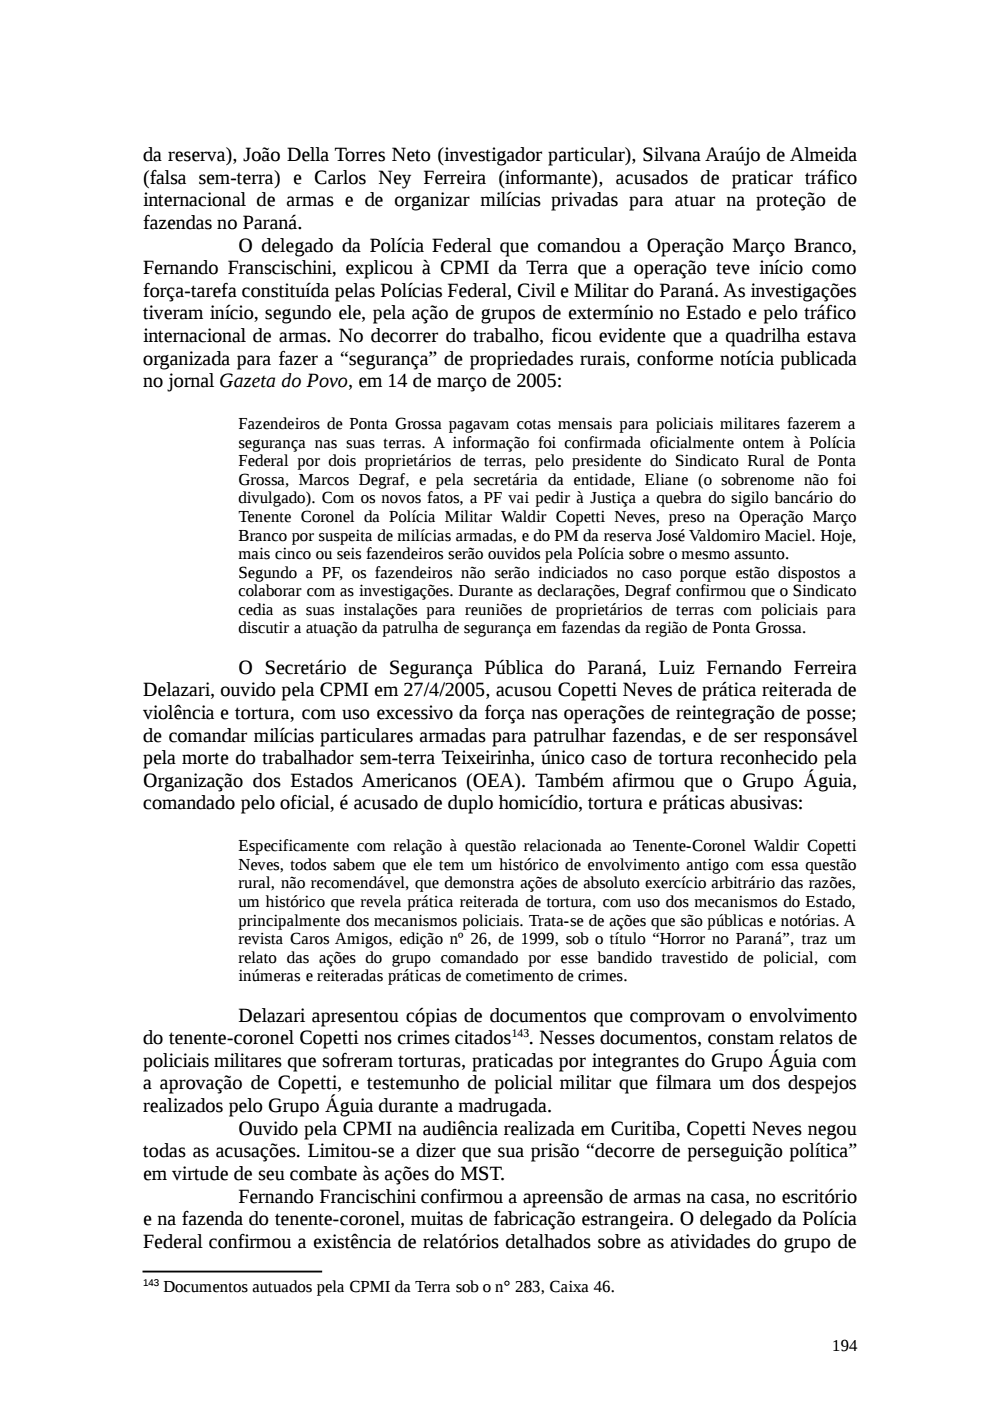 Page 194 from Relatório final da comissão